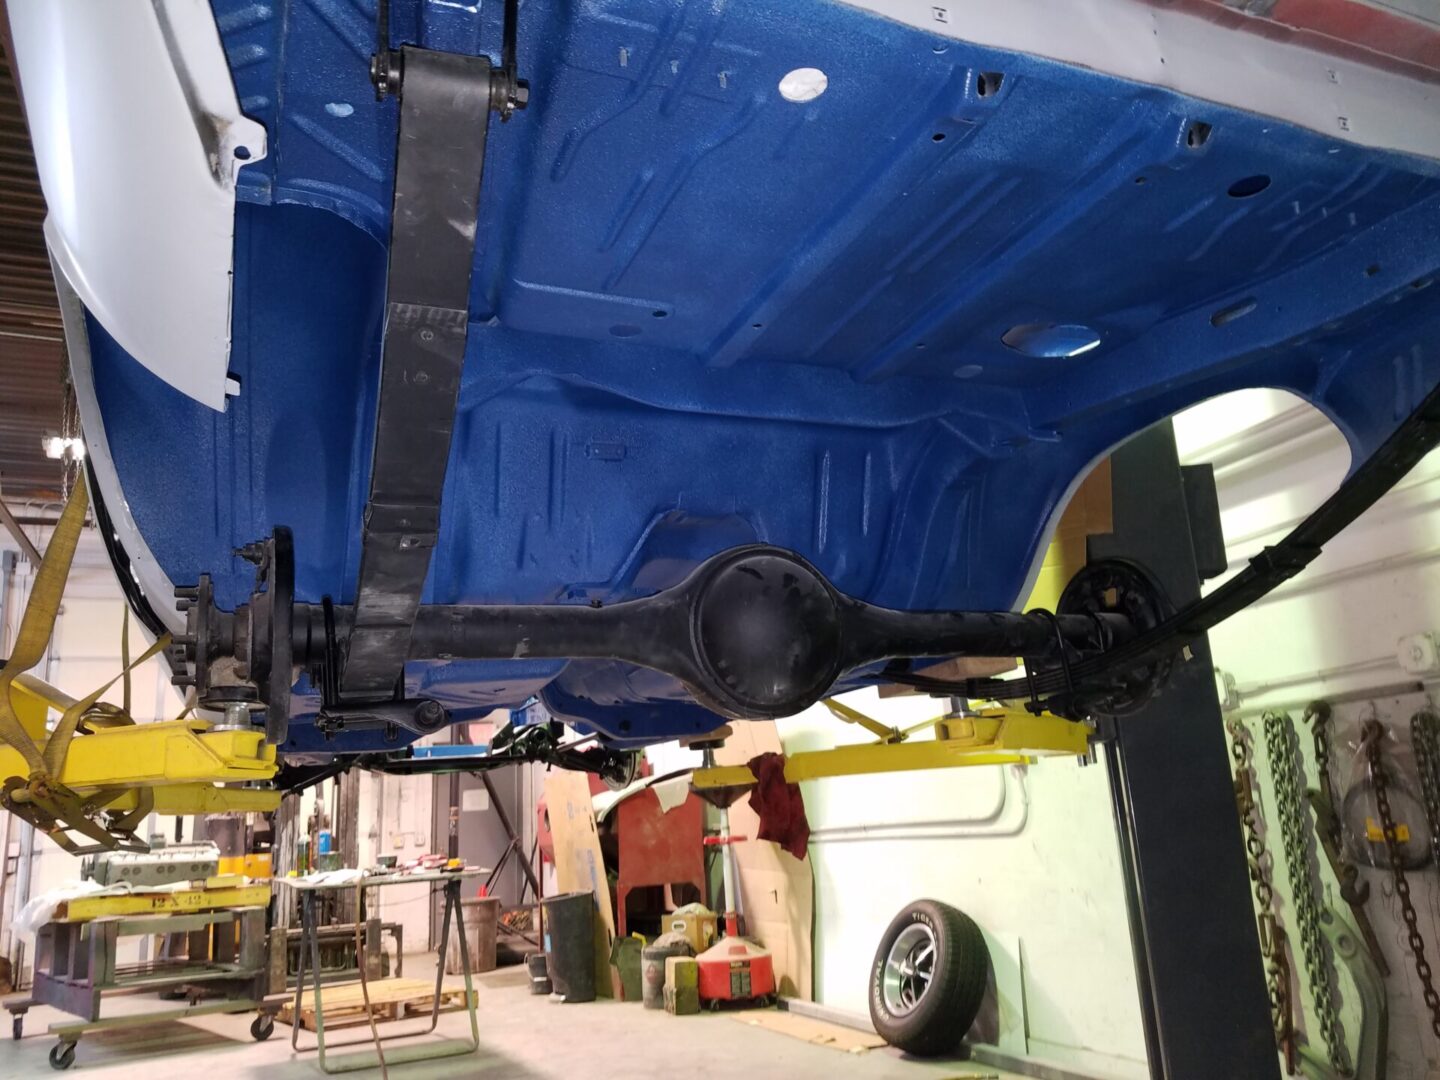 A blue car frame underside